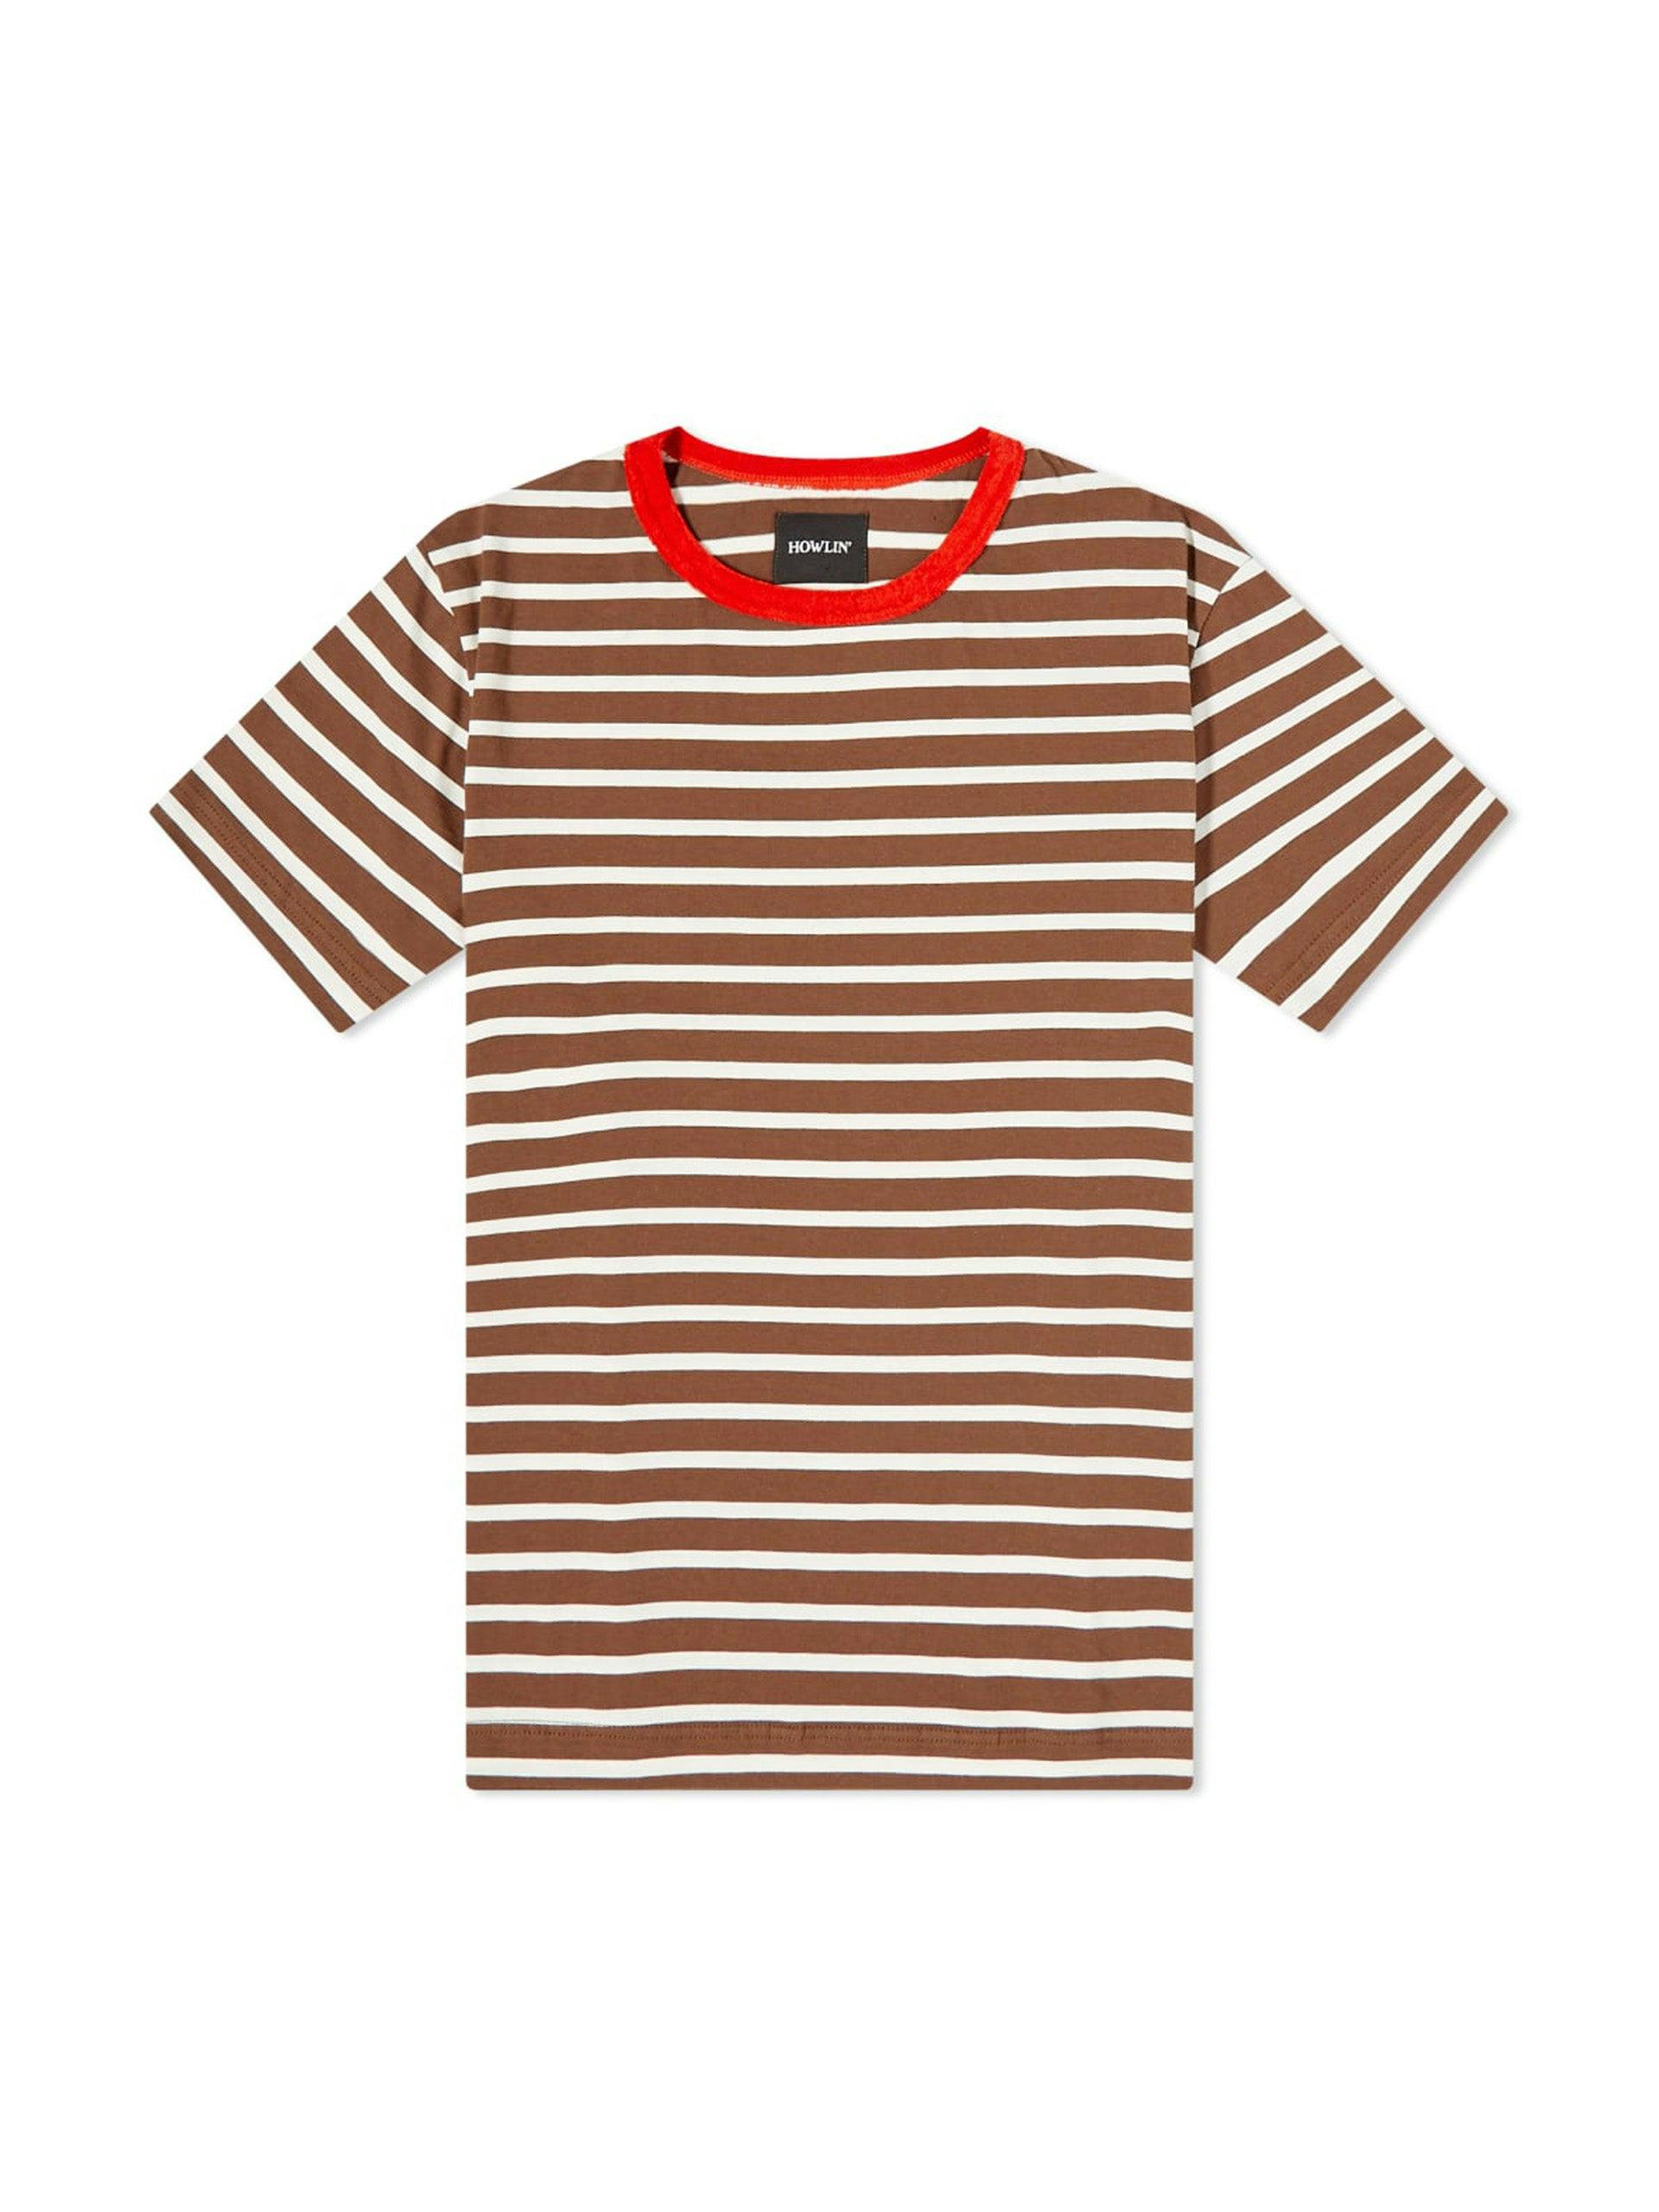 Mindless Boogie stripe t-shirt